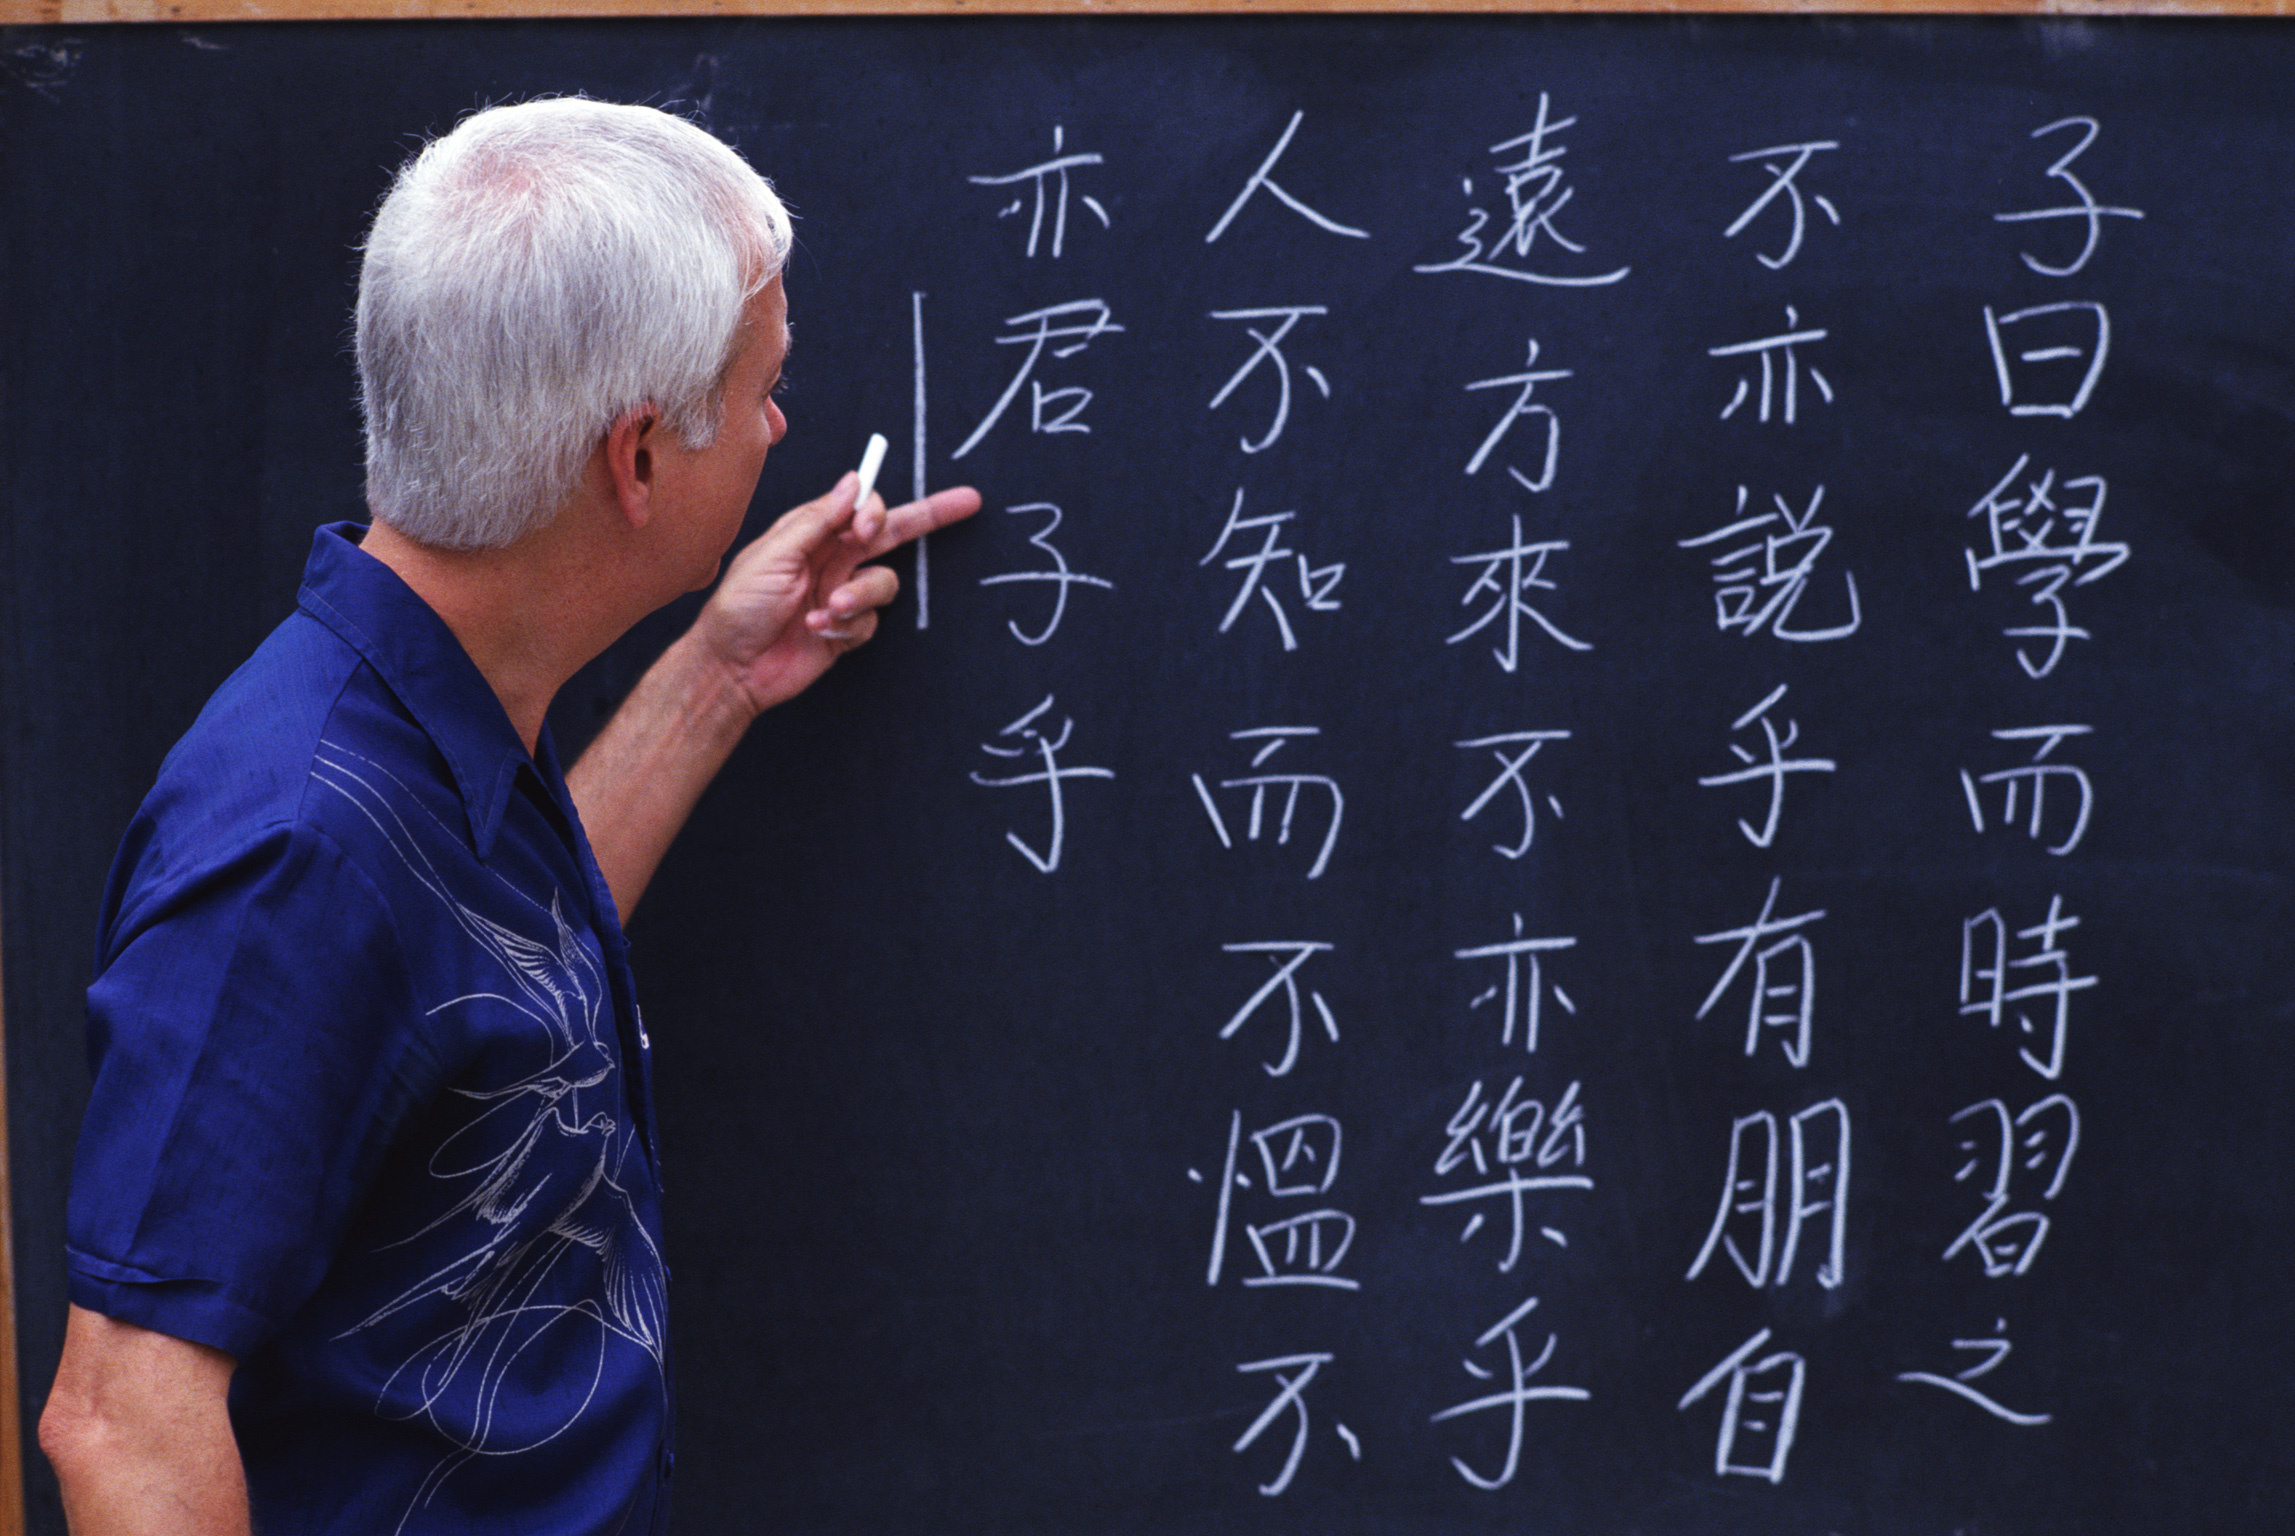 چرا چینی سخت ترین زبان دنیاست 